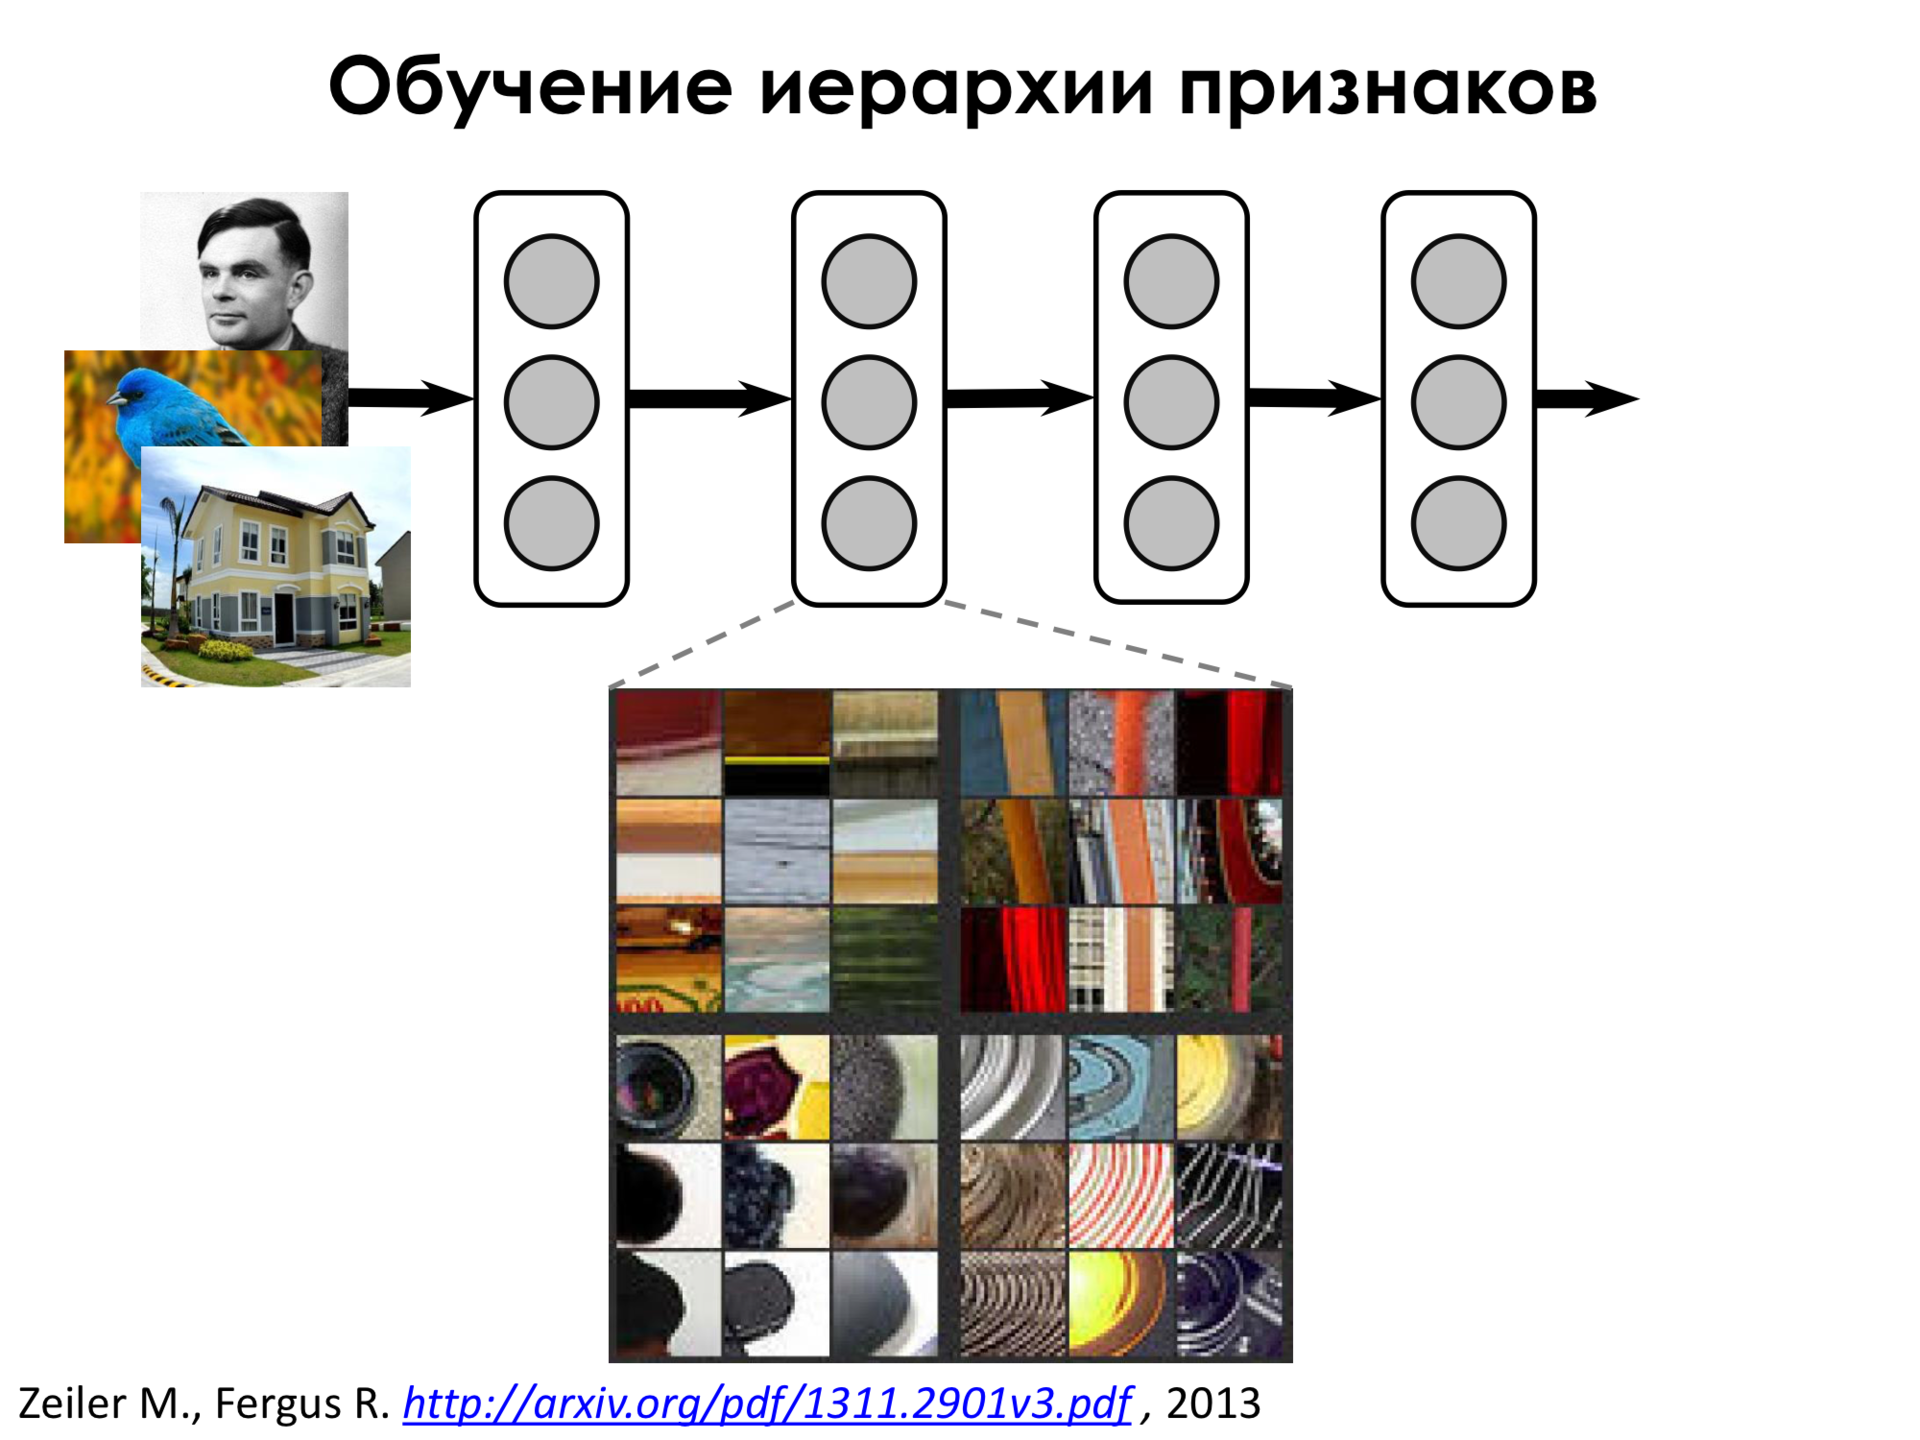 Самое главное о нейронных сетях. Лекция в Яндексе - 20